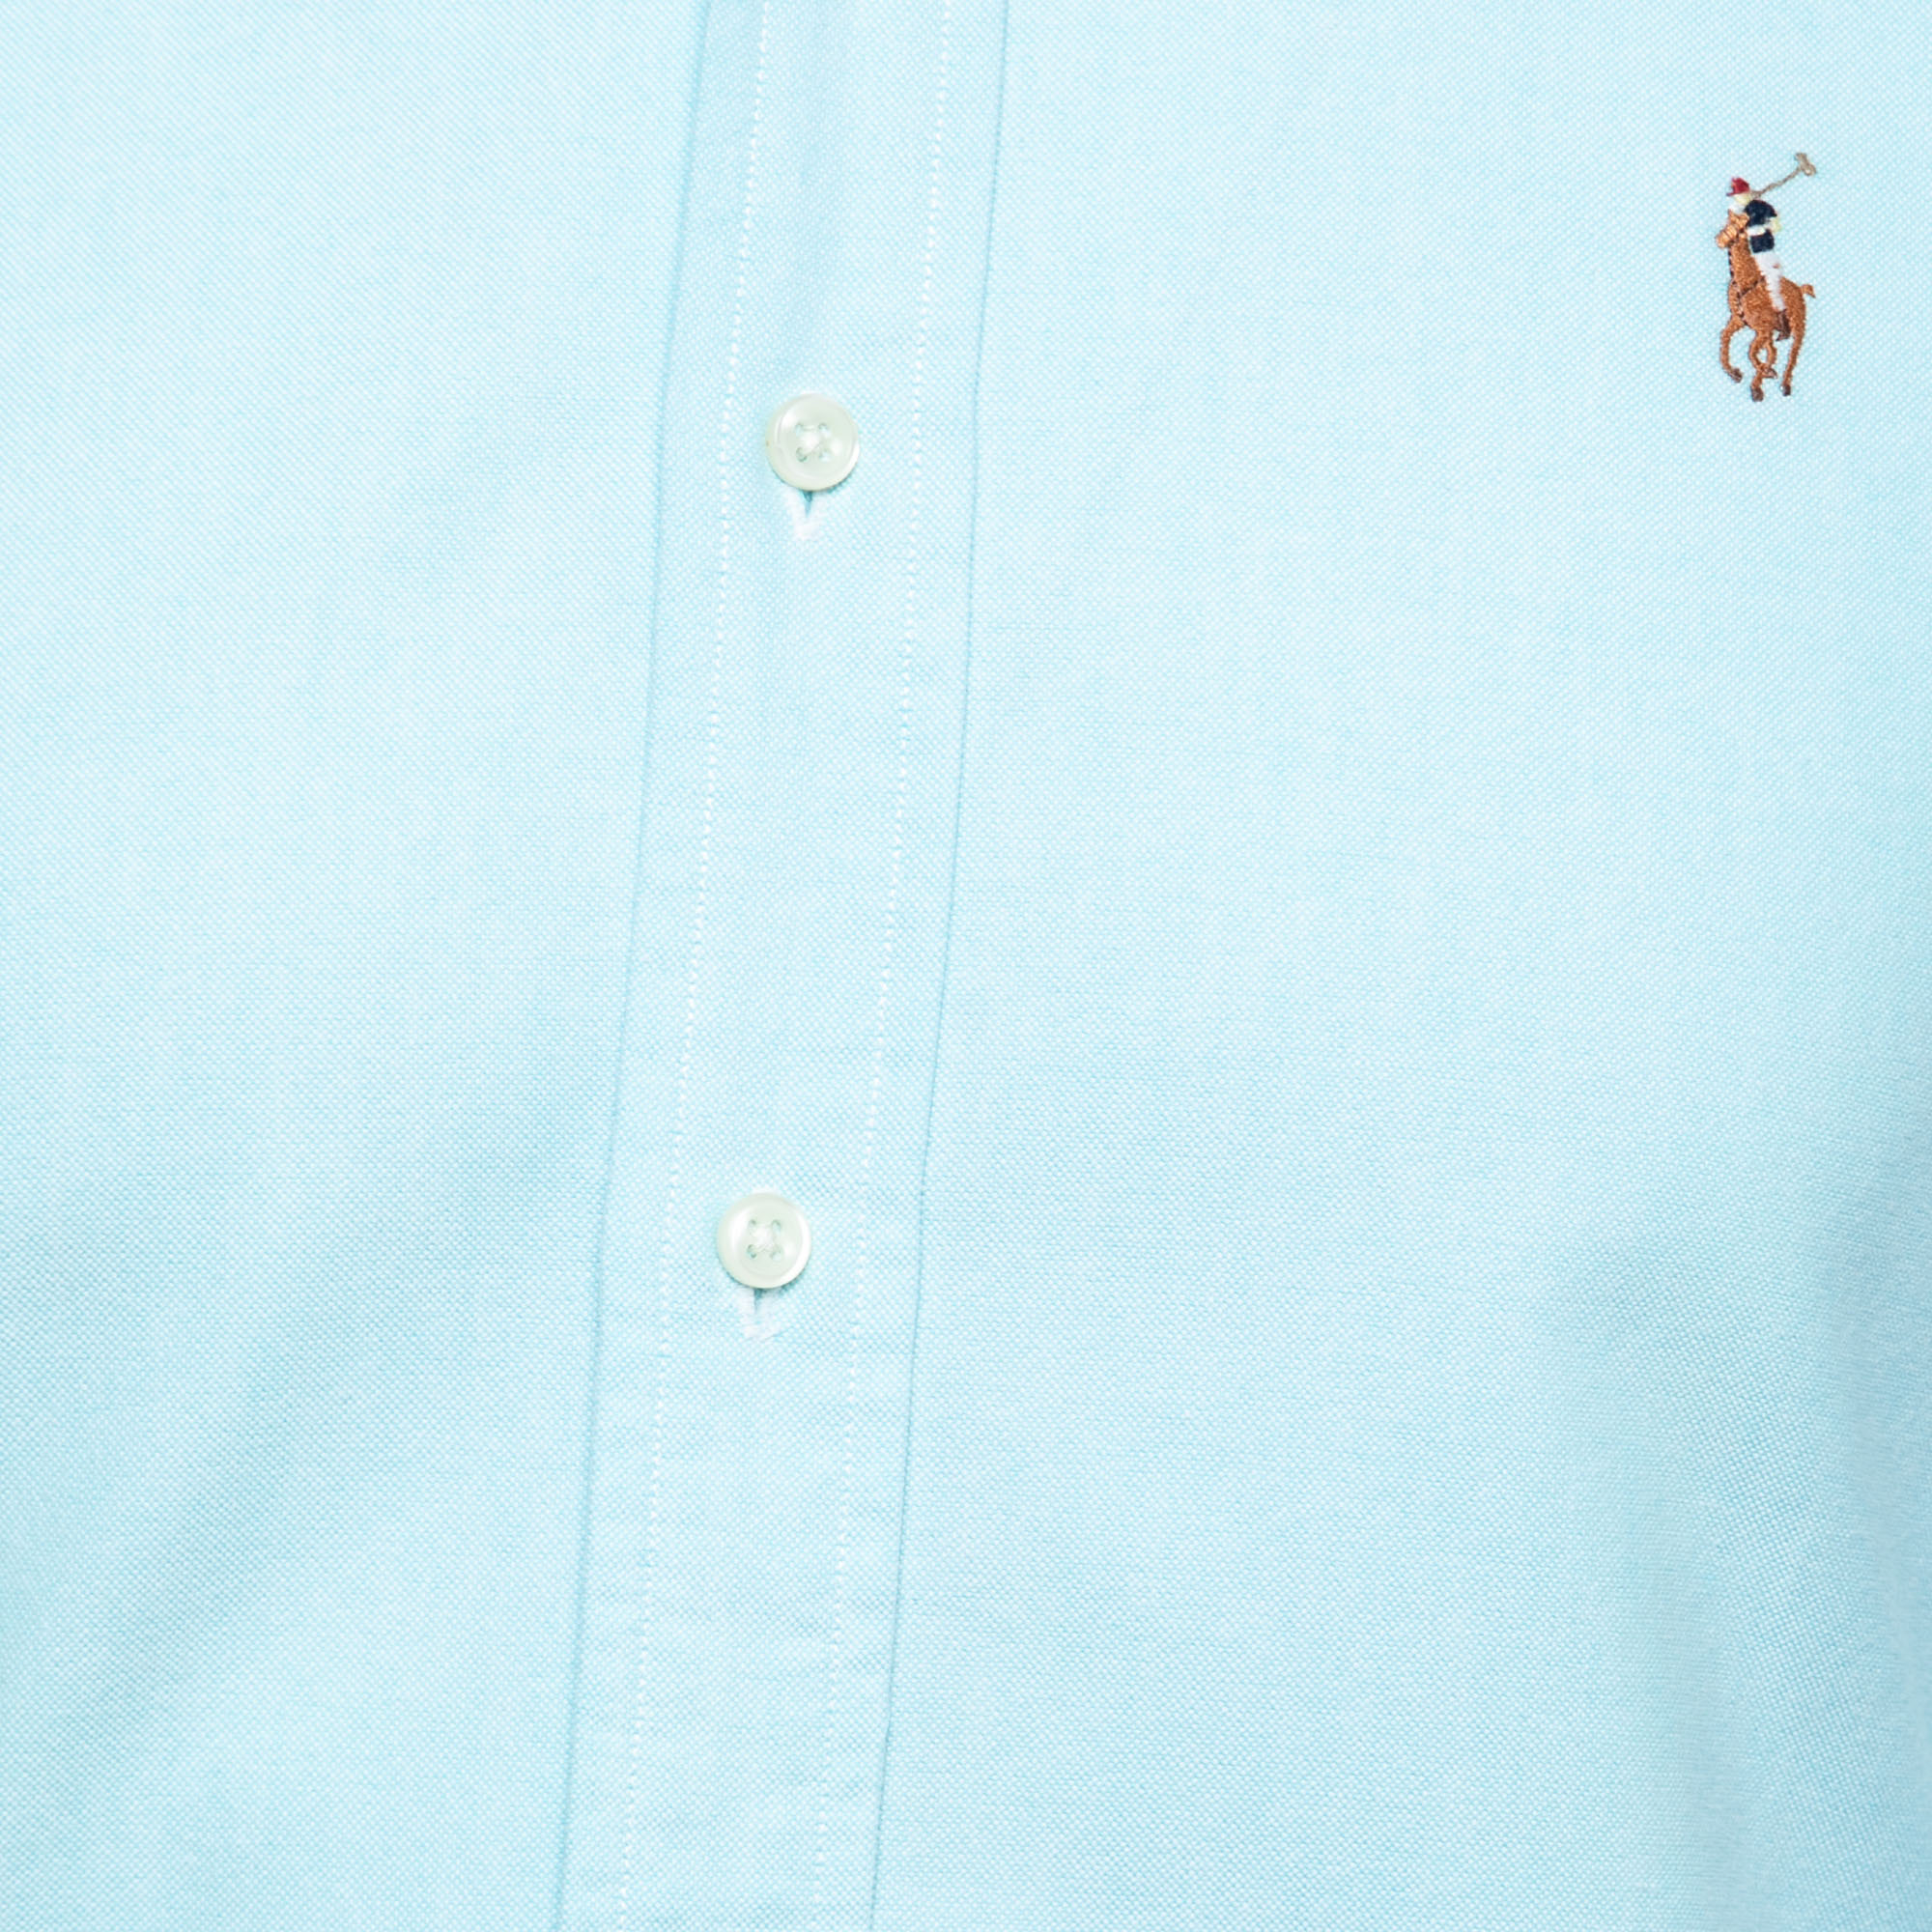 Polo Ralph Lauren Blue Cotton Long Sleeve Shirt S